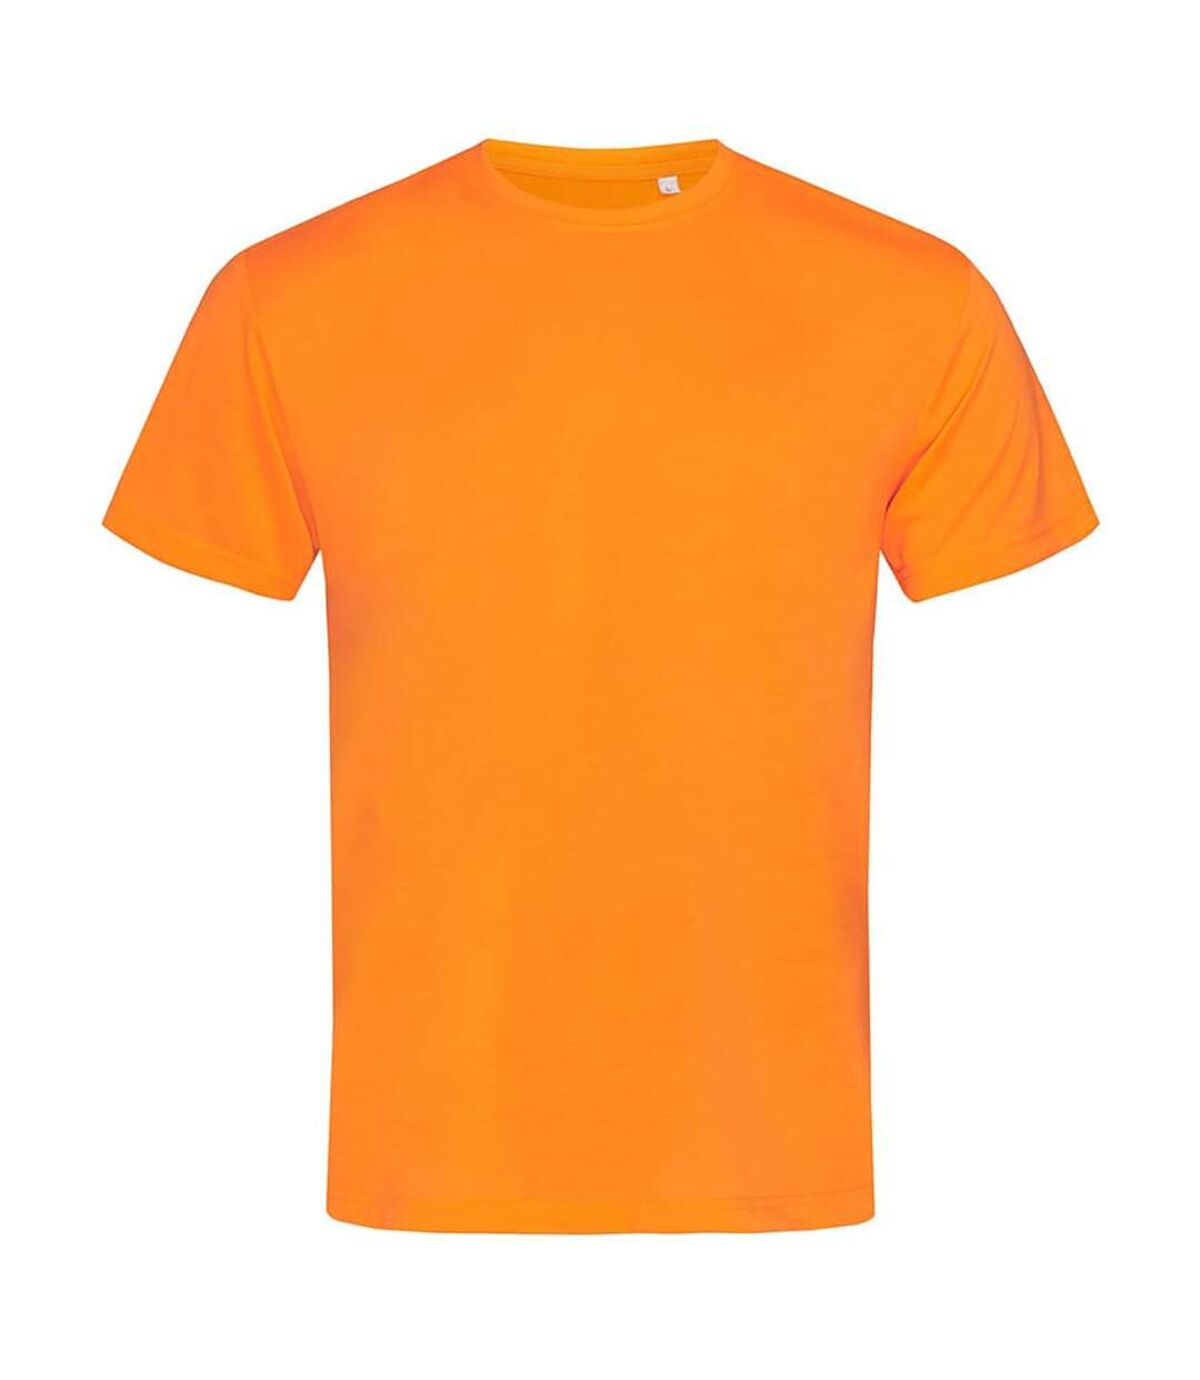 Stedman - T-shirt - Hommes (Orange) - UTAB350